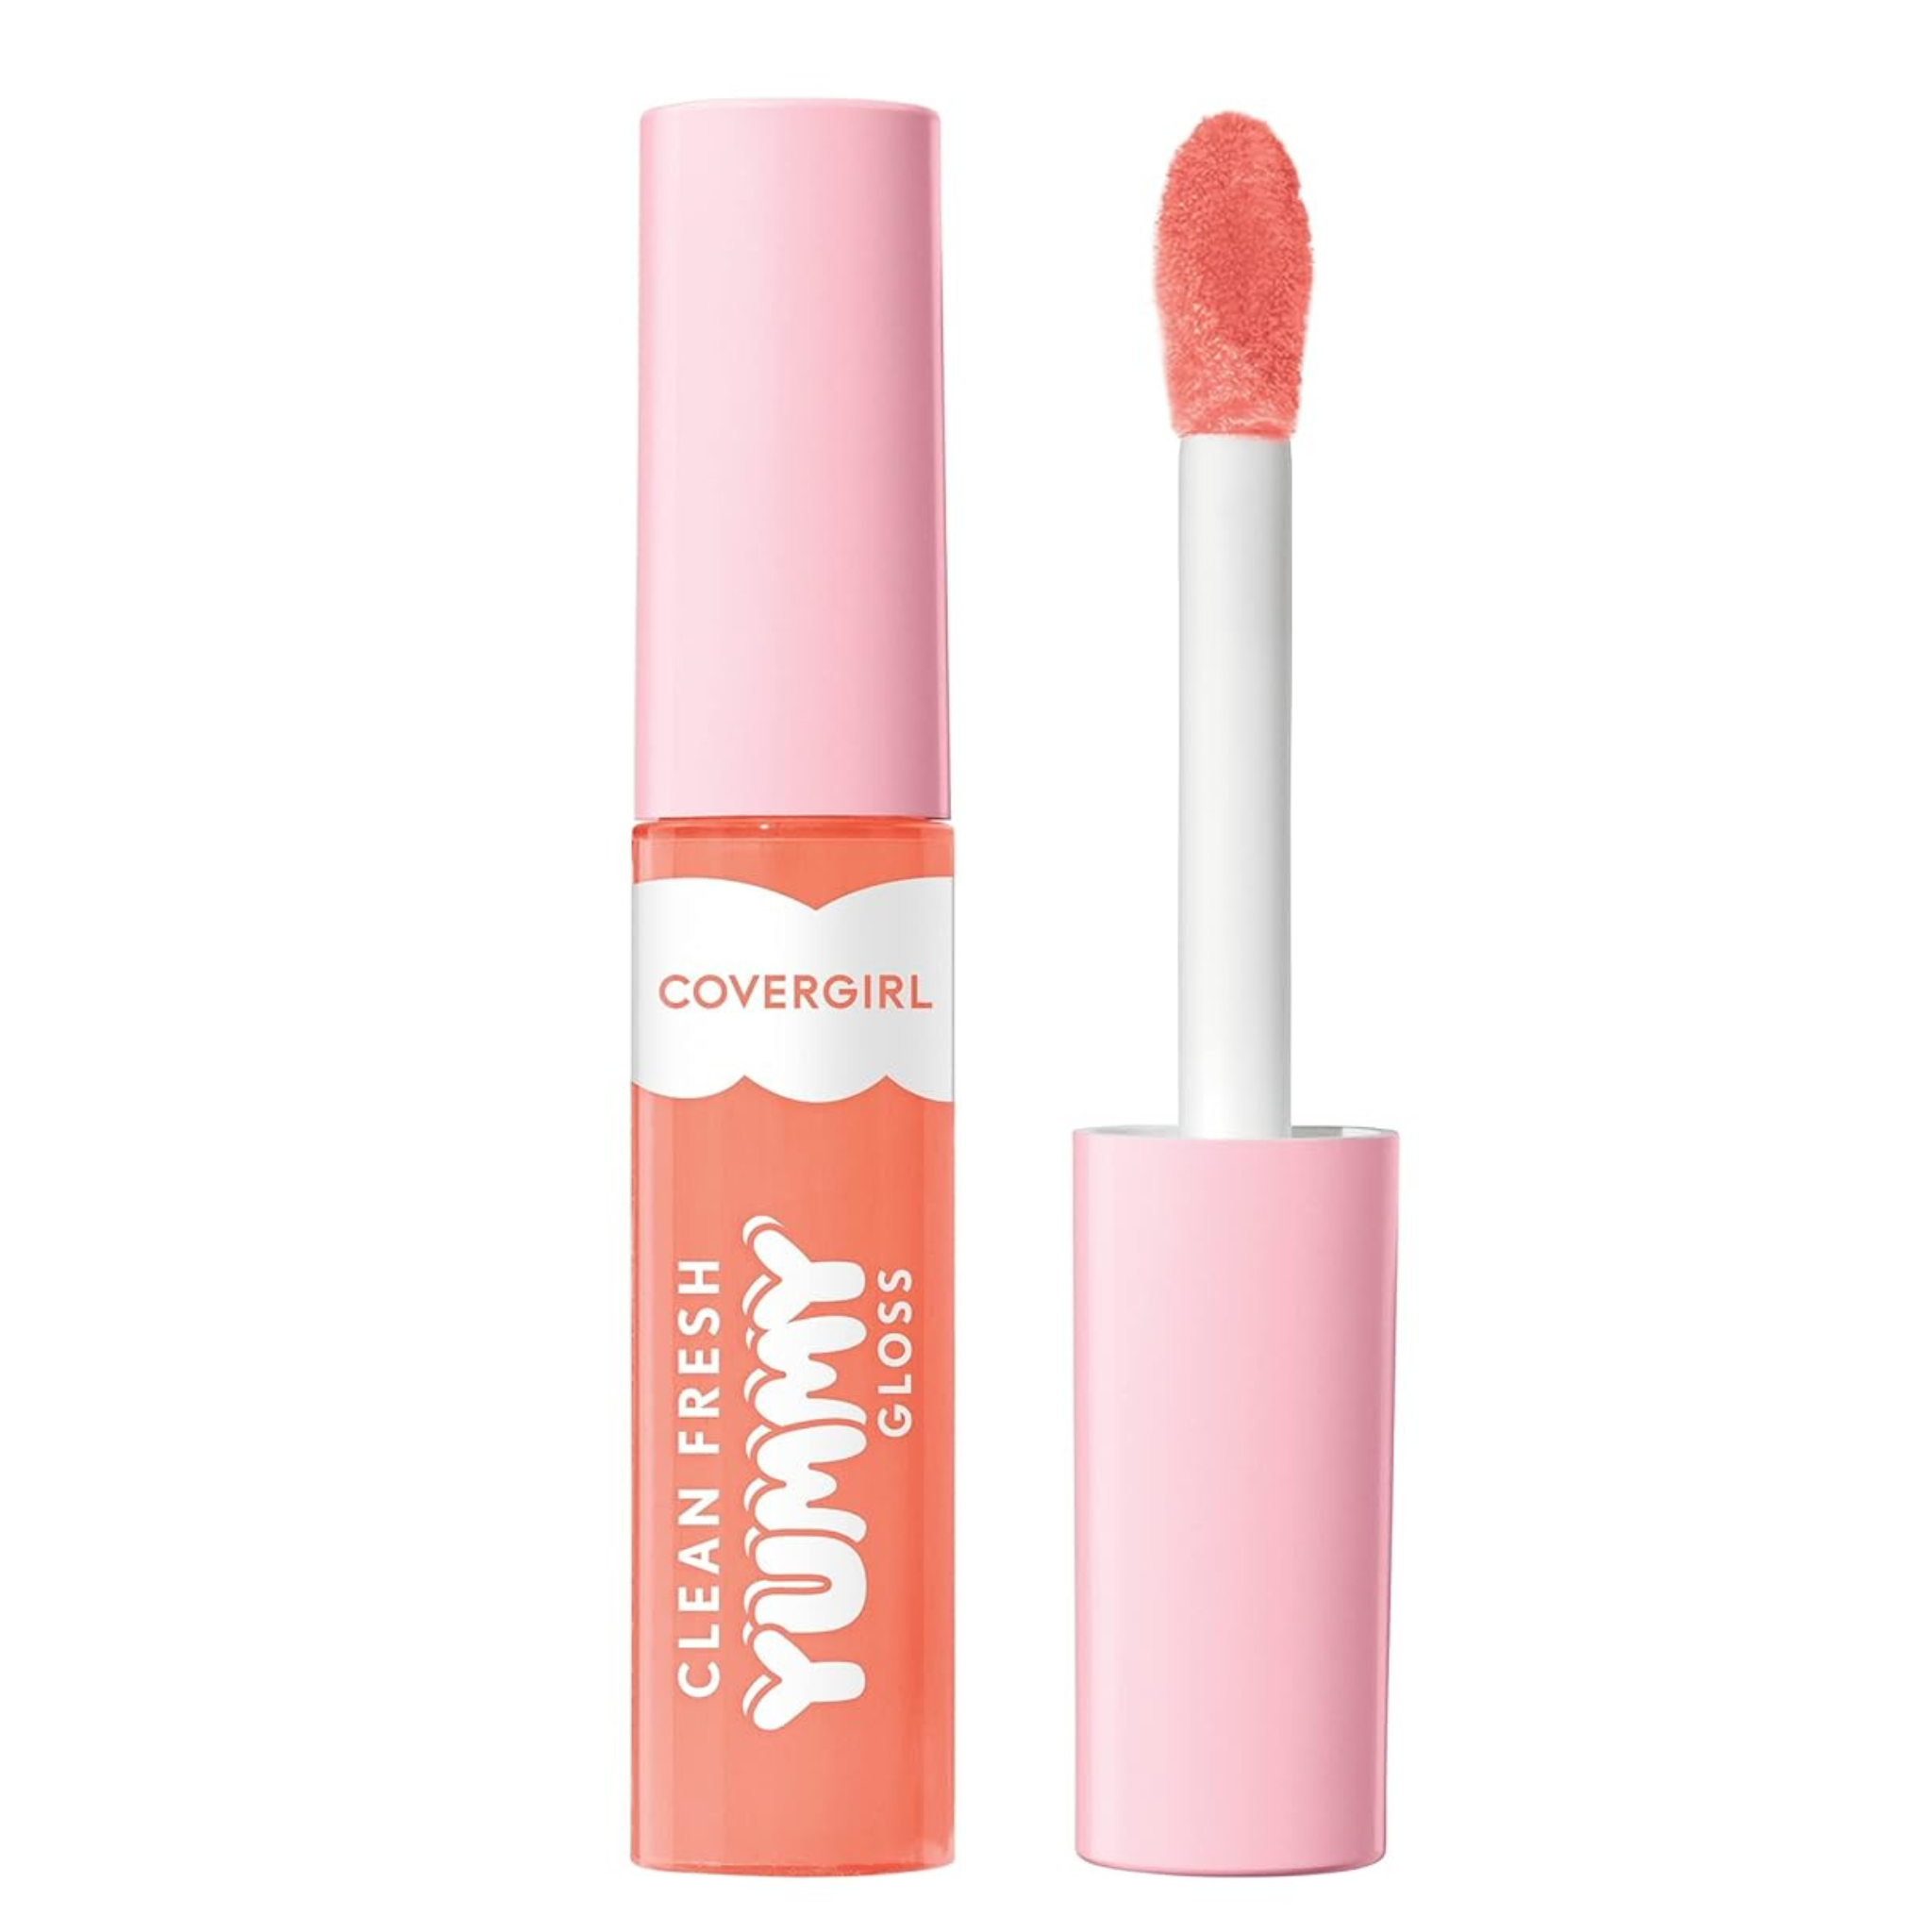 Covergirl Clean Fresh Yummy Lip Gloss (Peach Out)